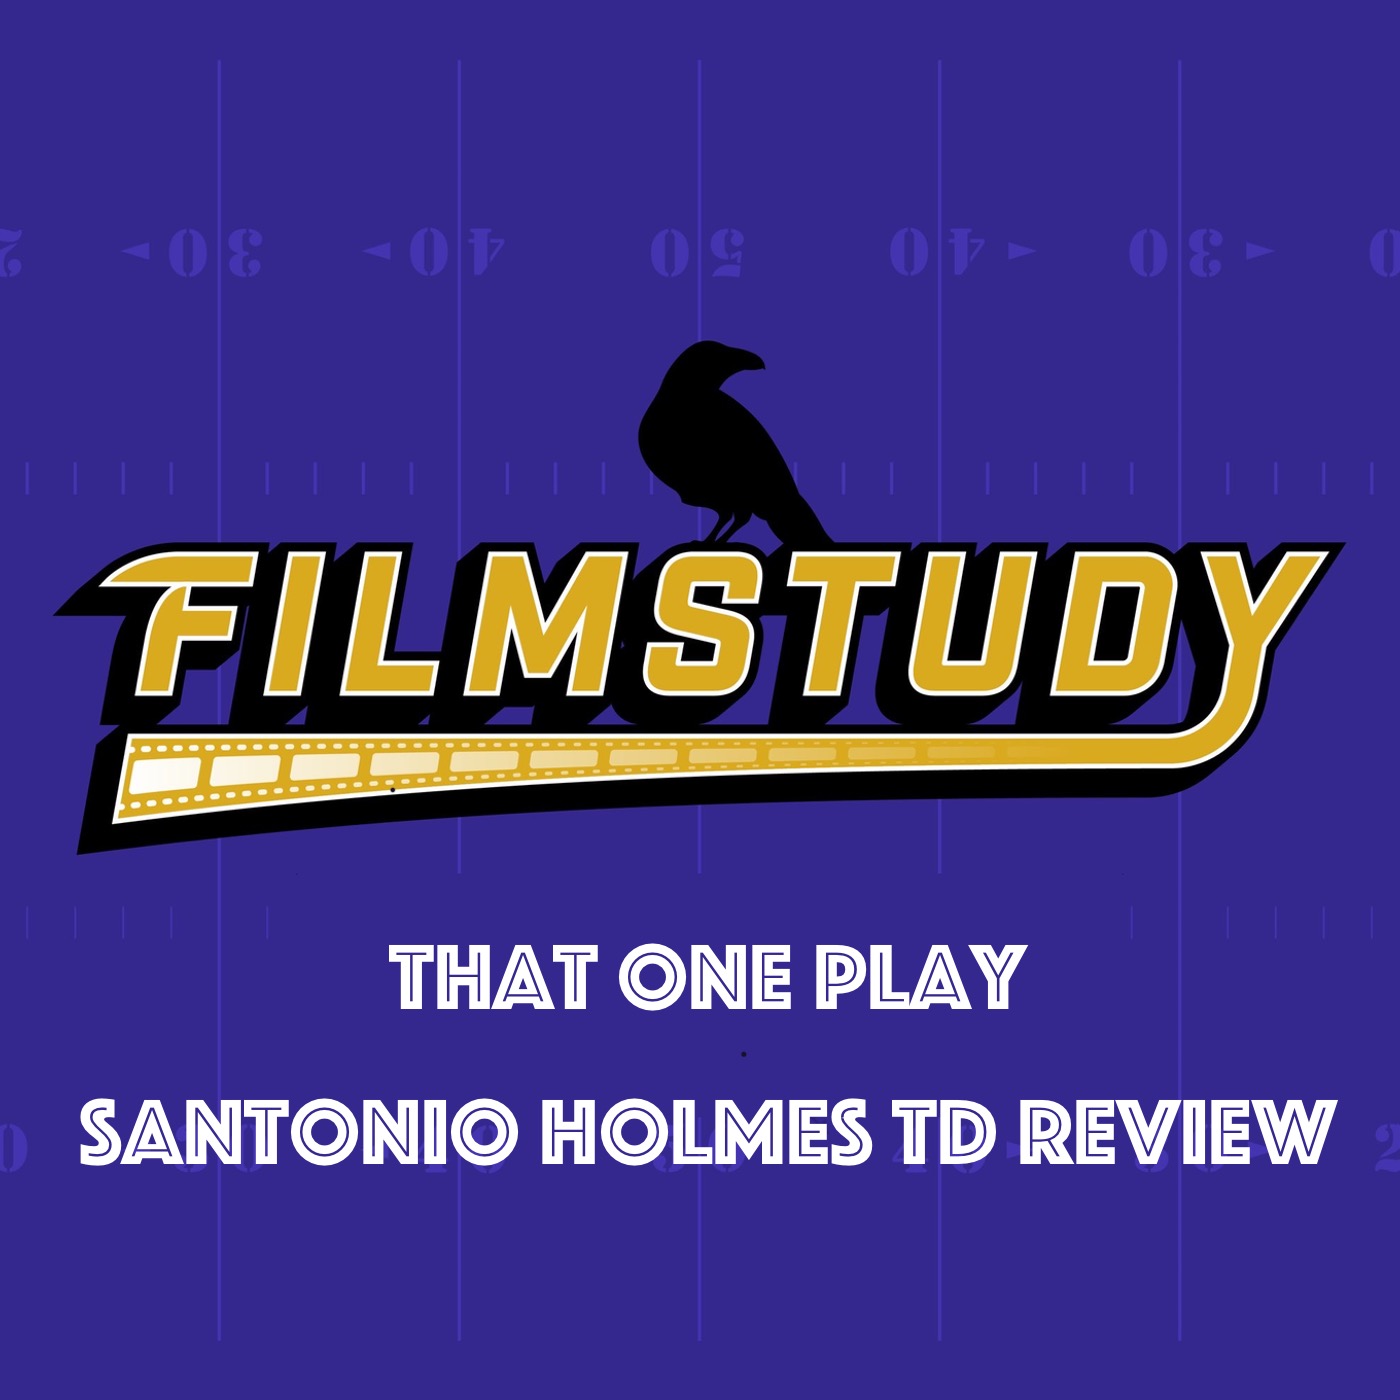 TOP : Santonio Holmes TD Review